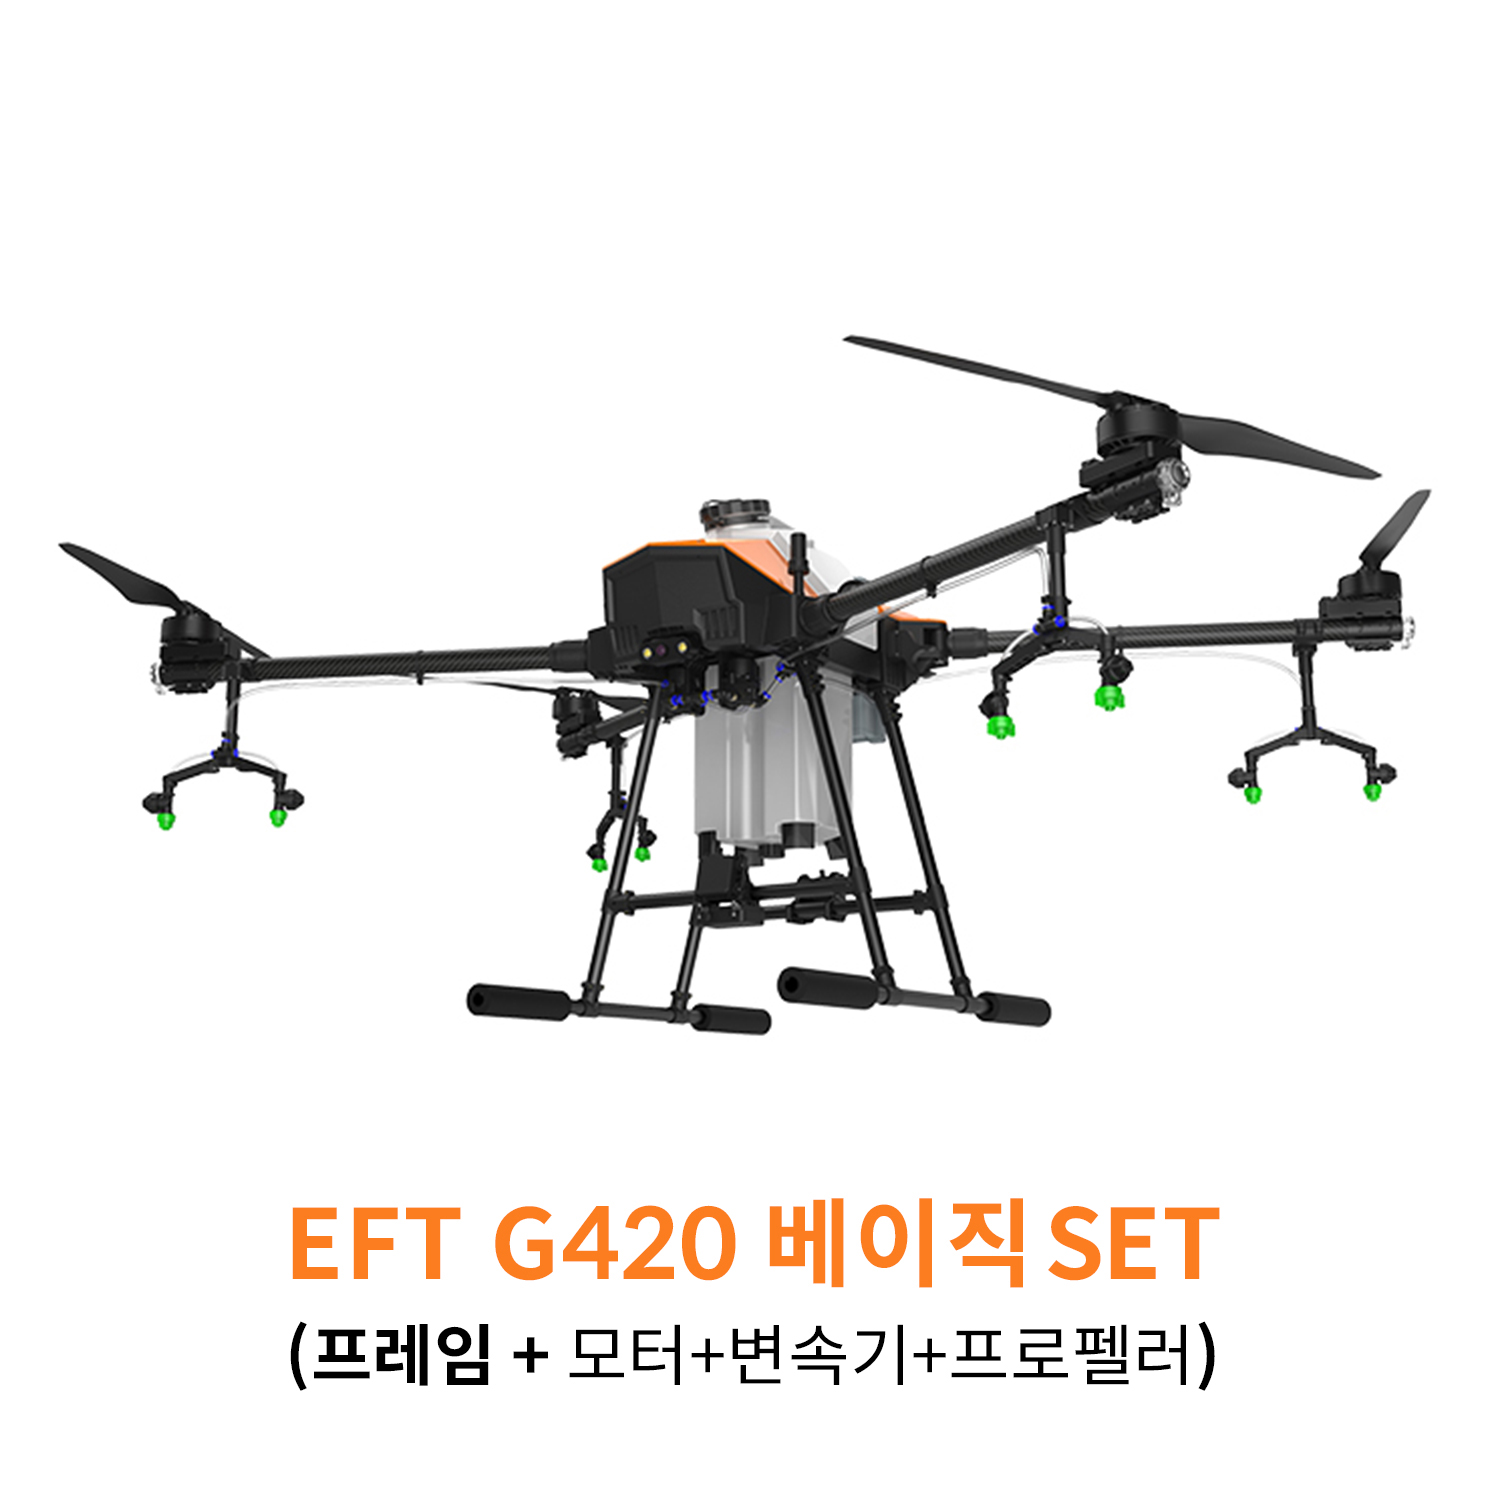 [당일출고]EFT G420 베이직 SET 농업 방제 드론 하비윙 x9plus 파워시스템 탑재 헬셀